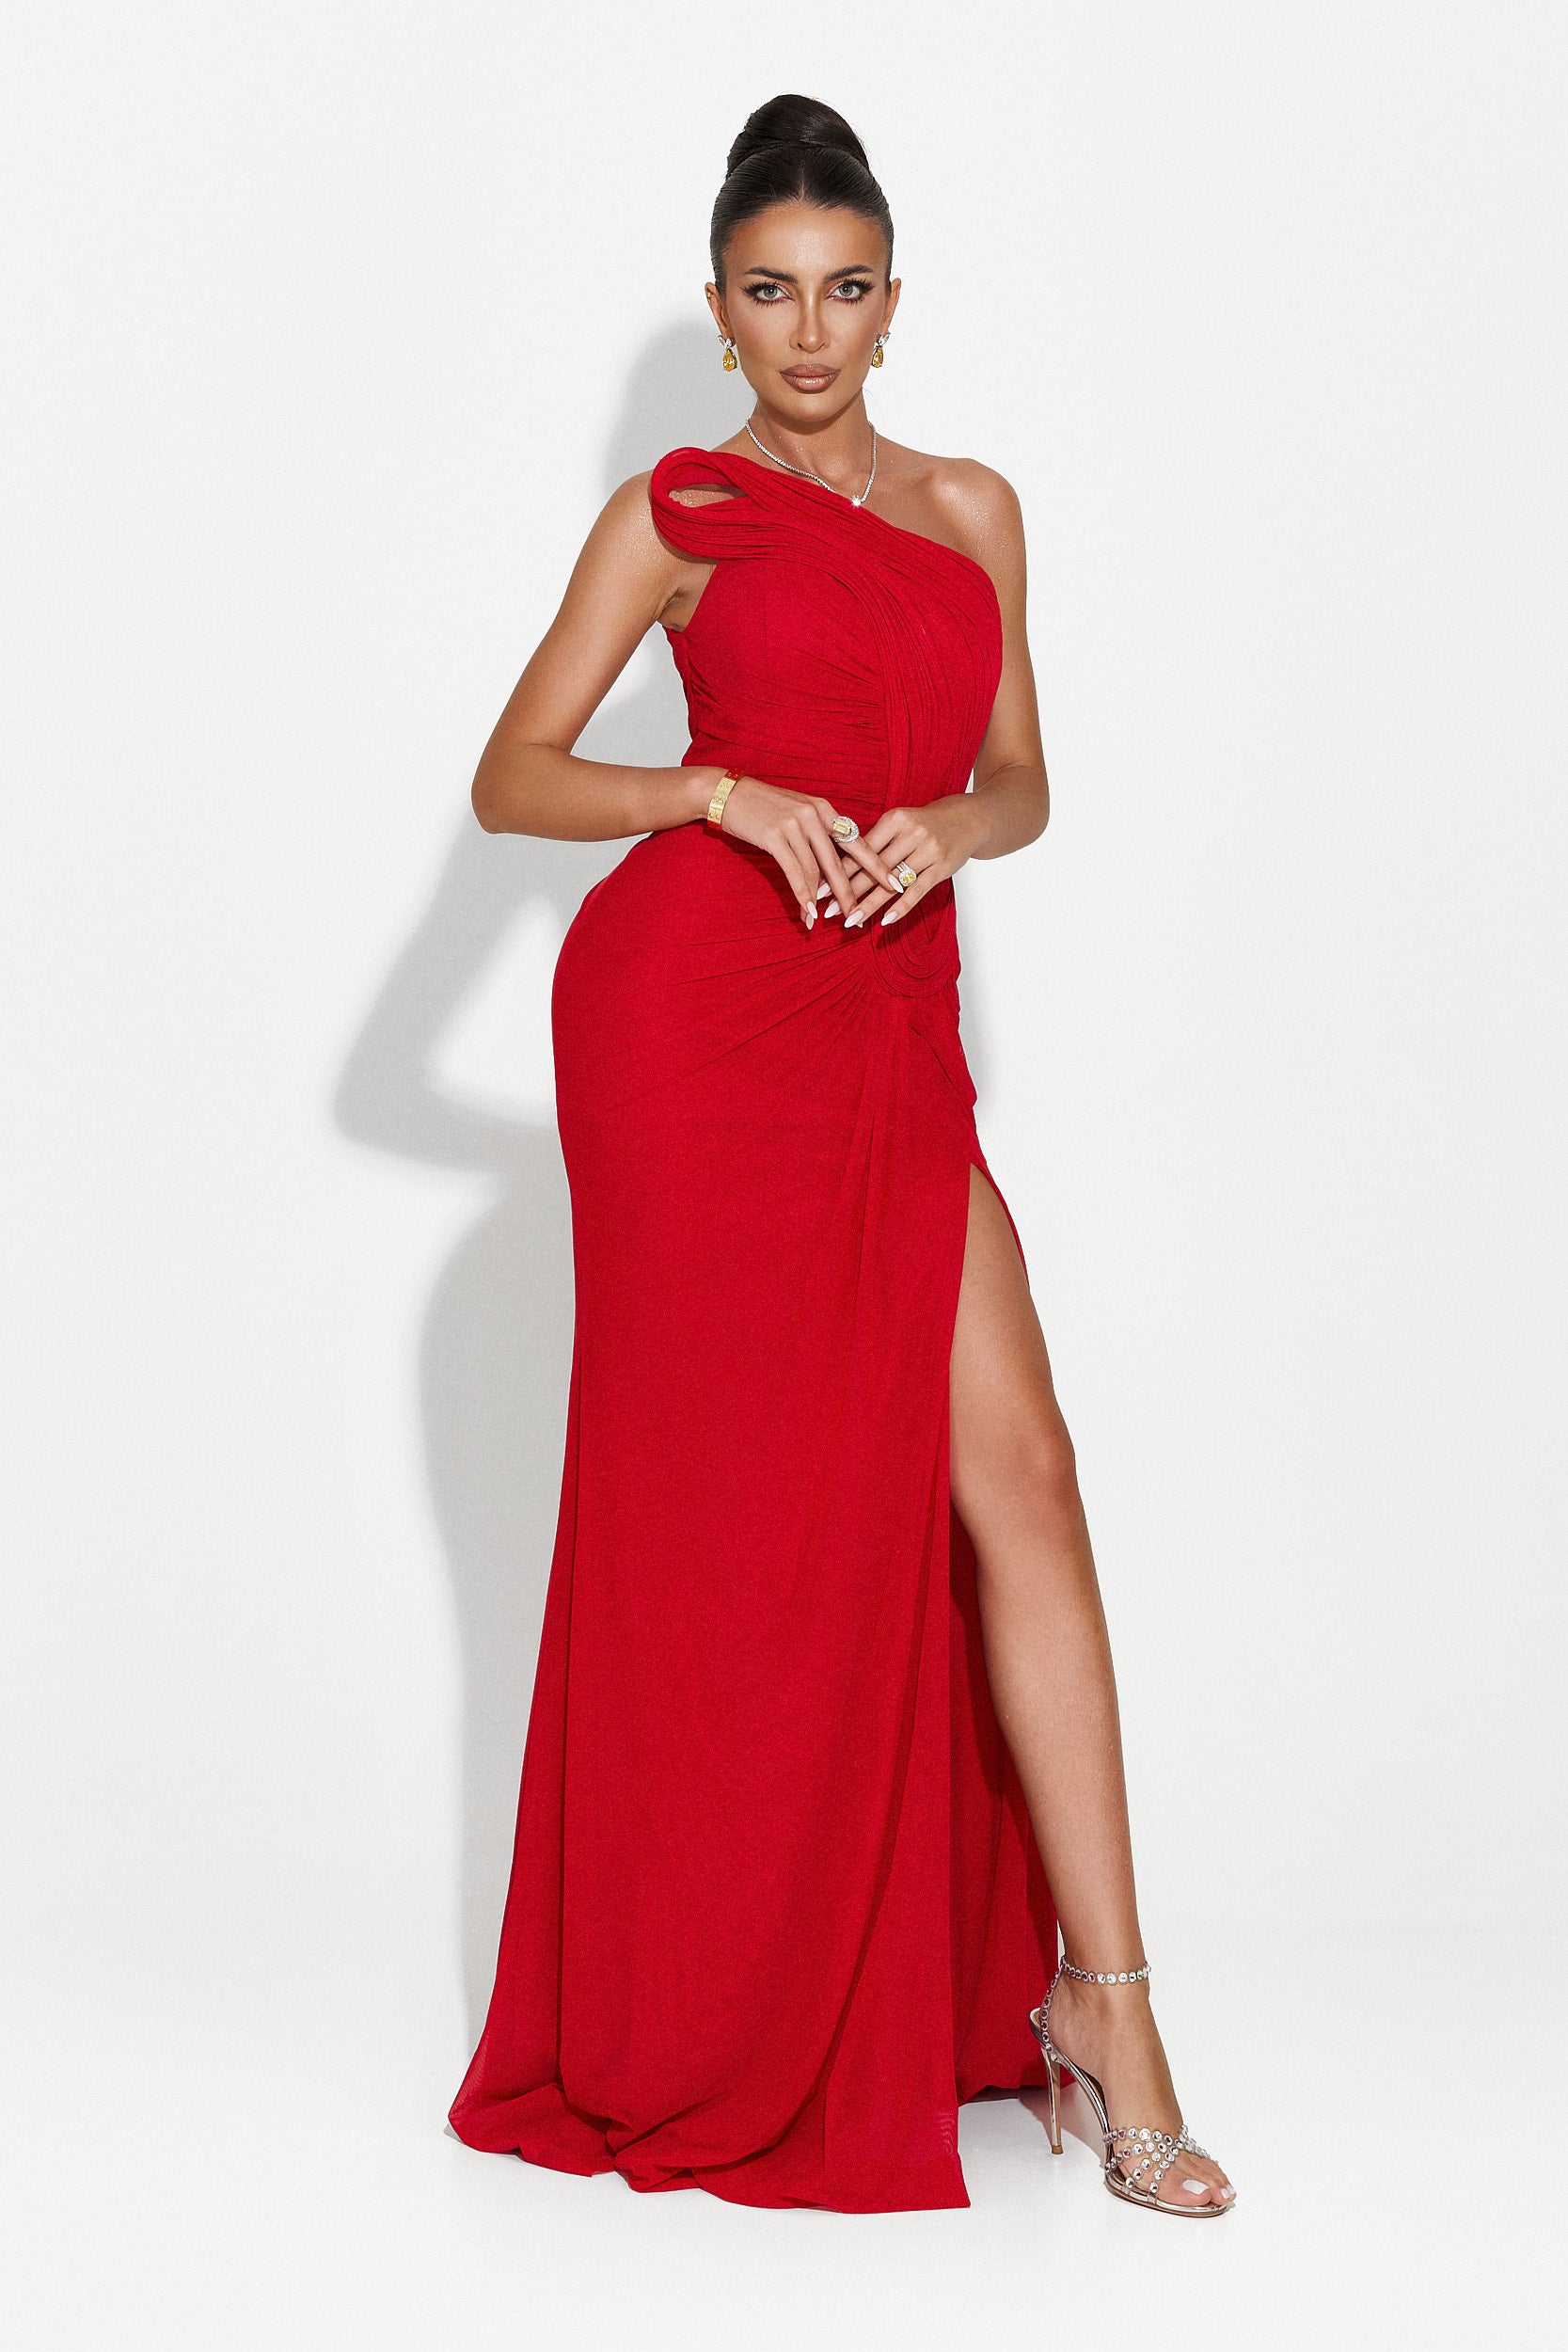 Stacey Bogas hosszú piros női ruha